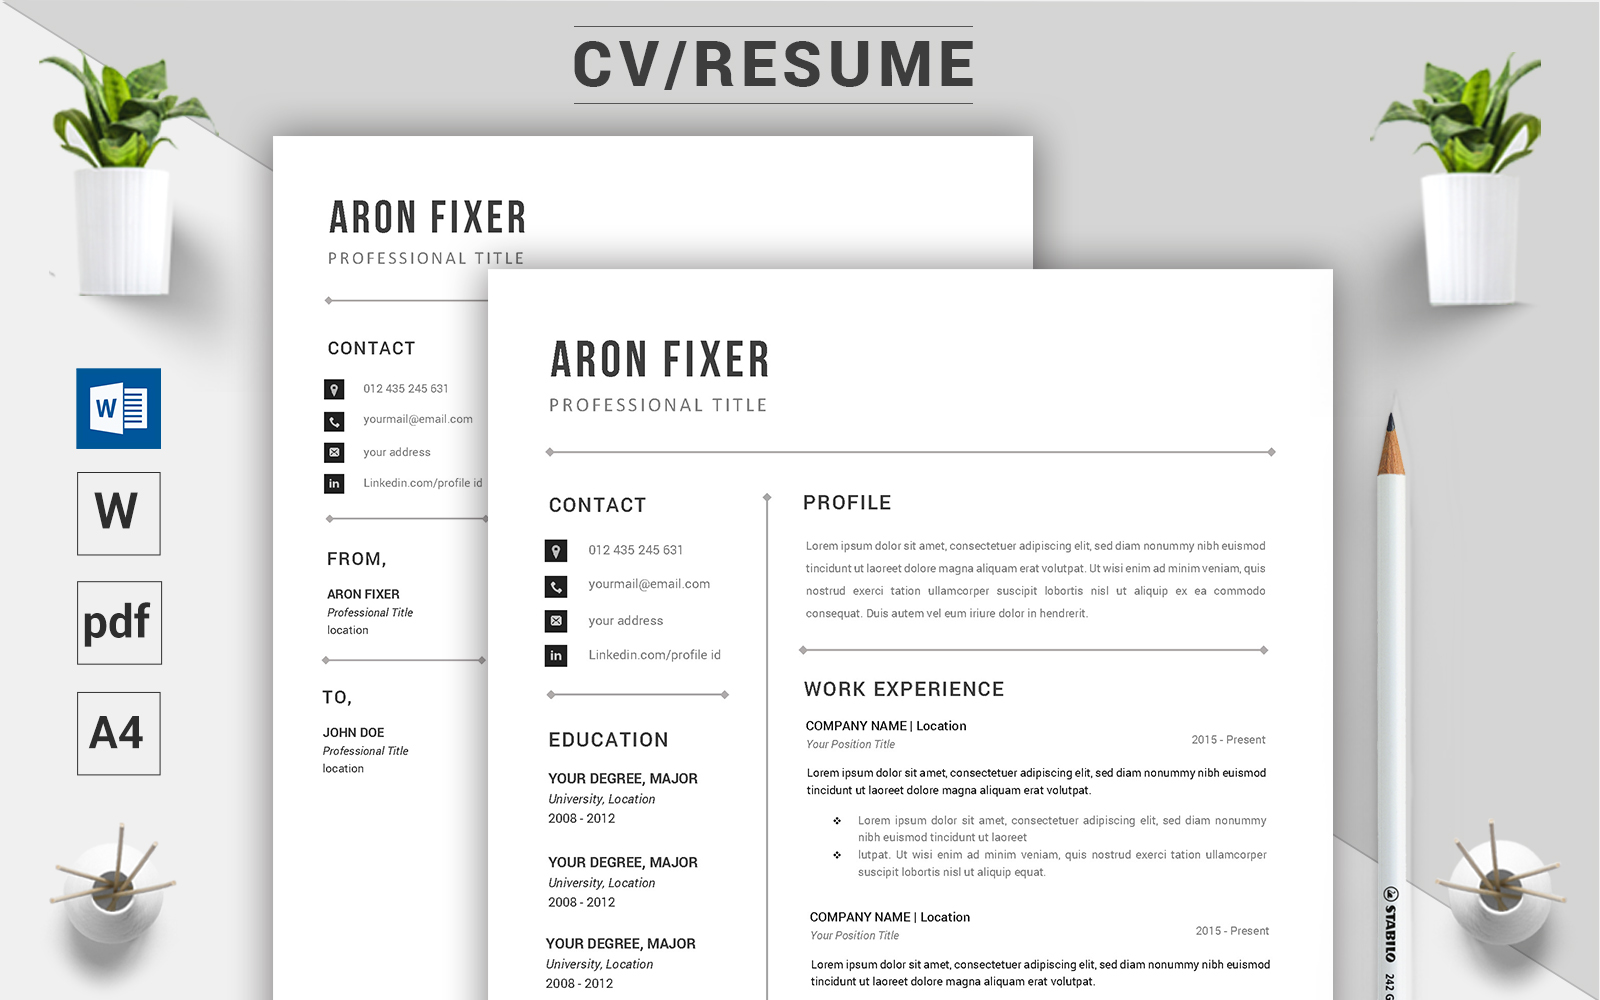 Aron Fixer - CV Resume Template